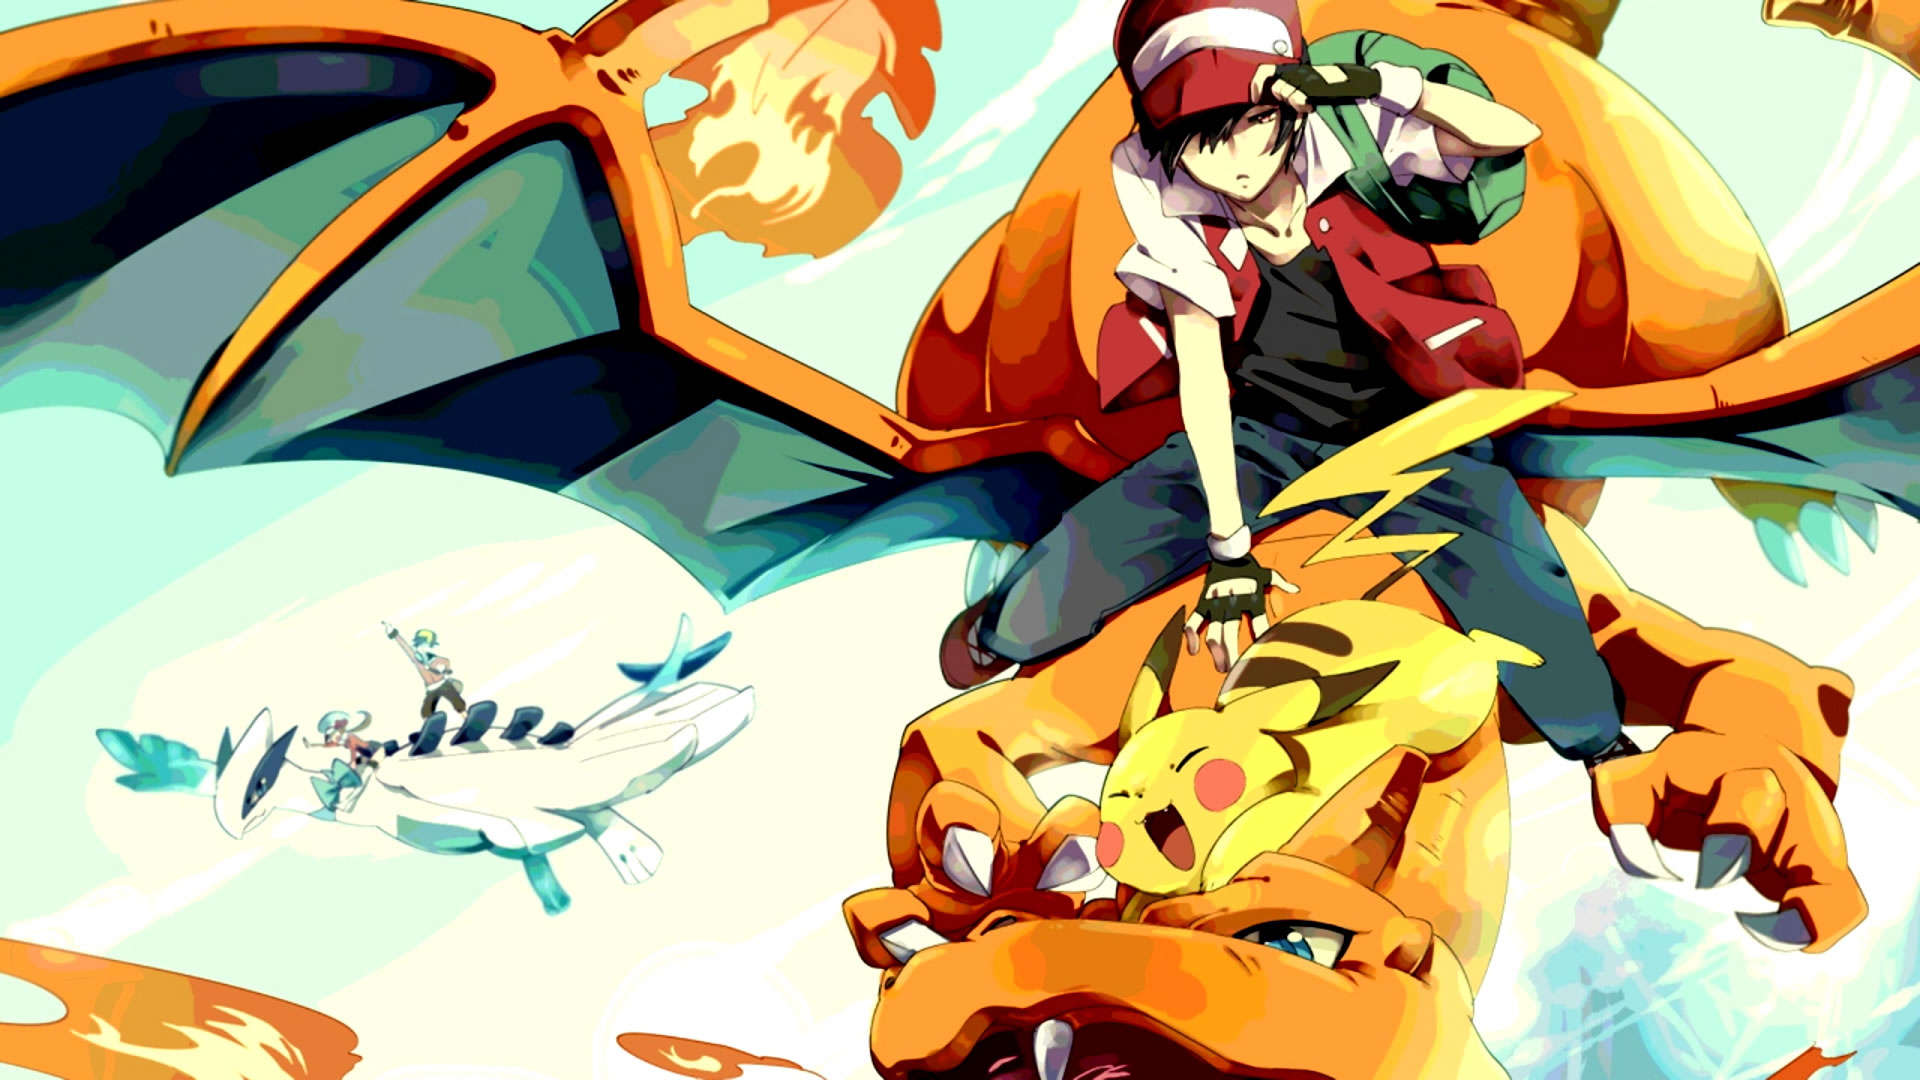 download wallpaper: Pokemon wallpaper